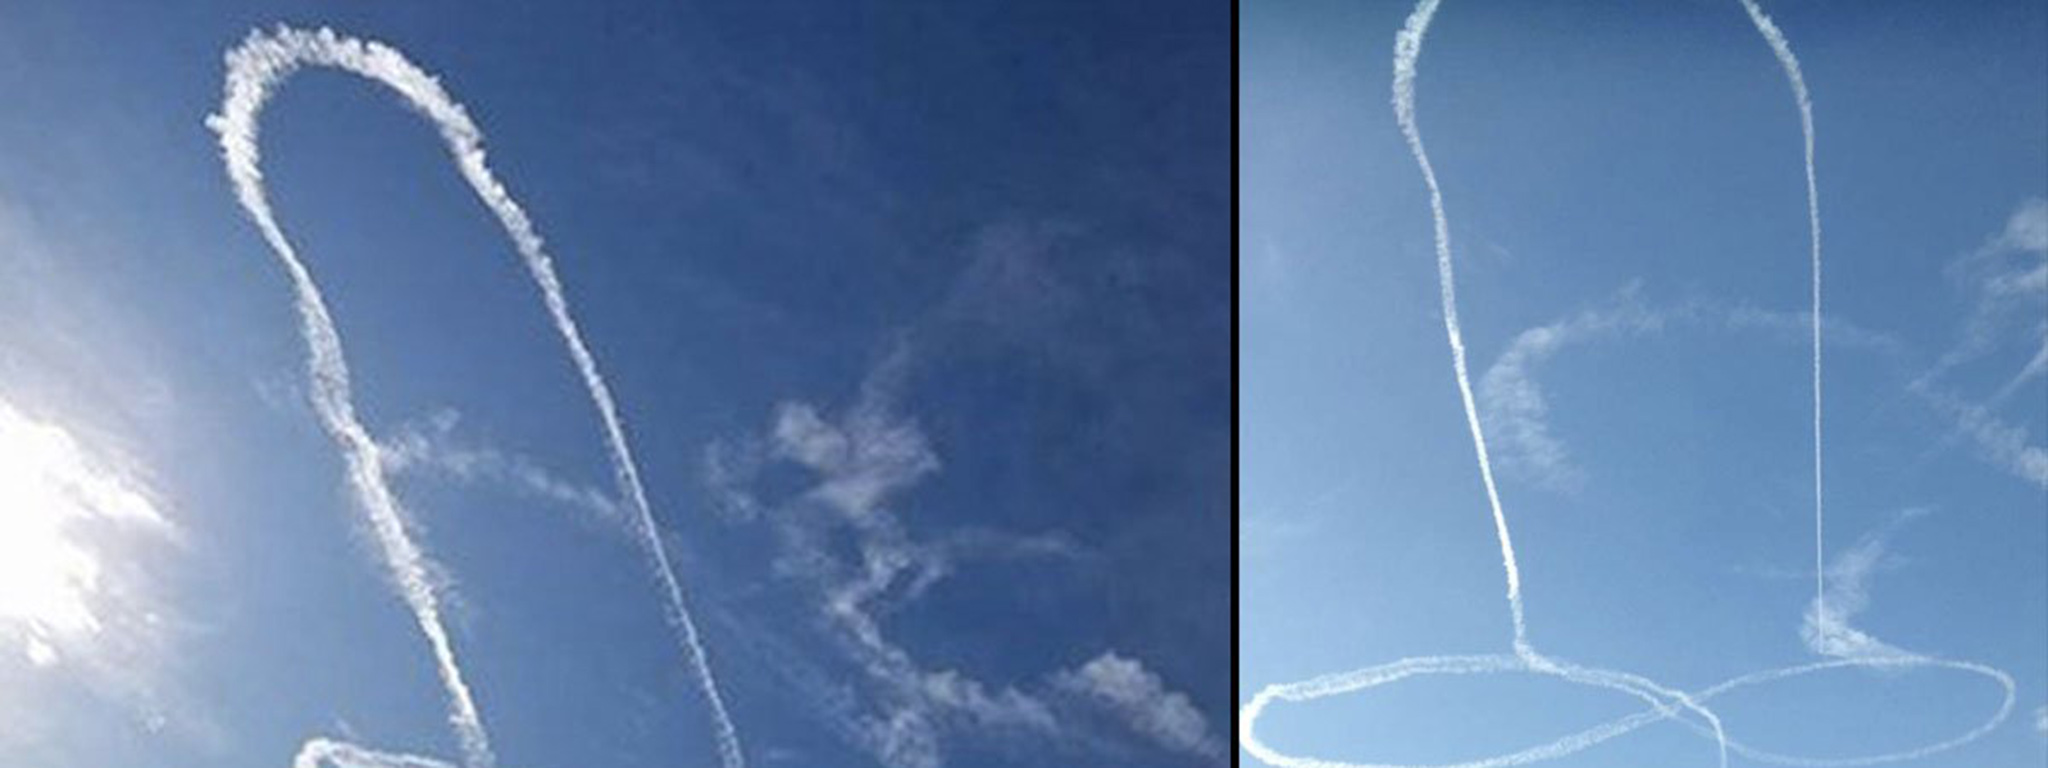 Phi công máy bay chiến đấu vẽ hình "ku" trên bầu trời, Hải quân Mỹ đòi điều tra